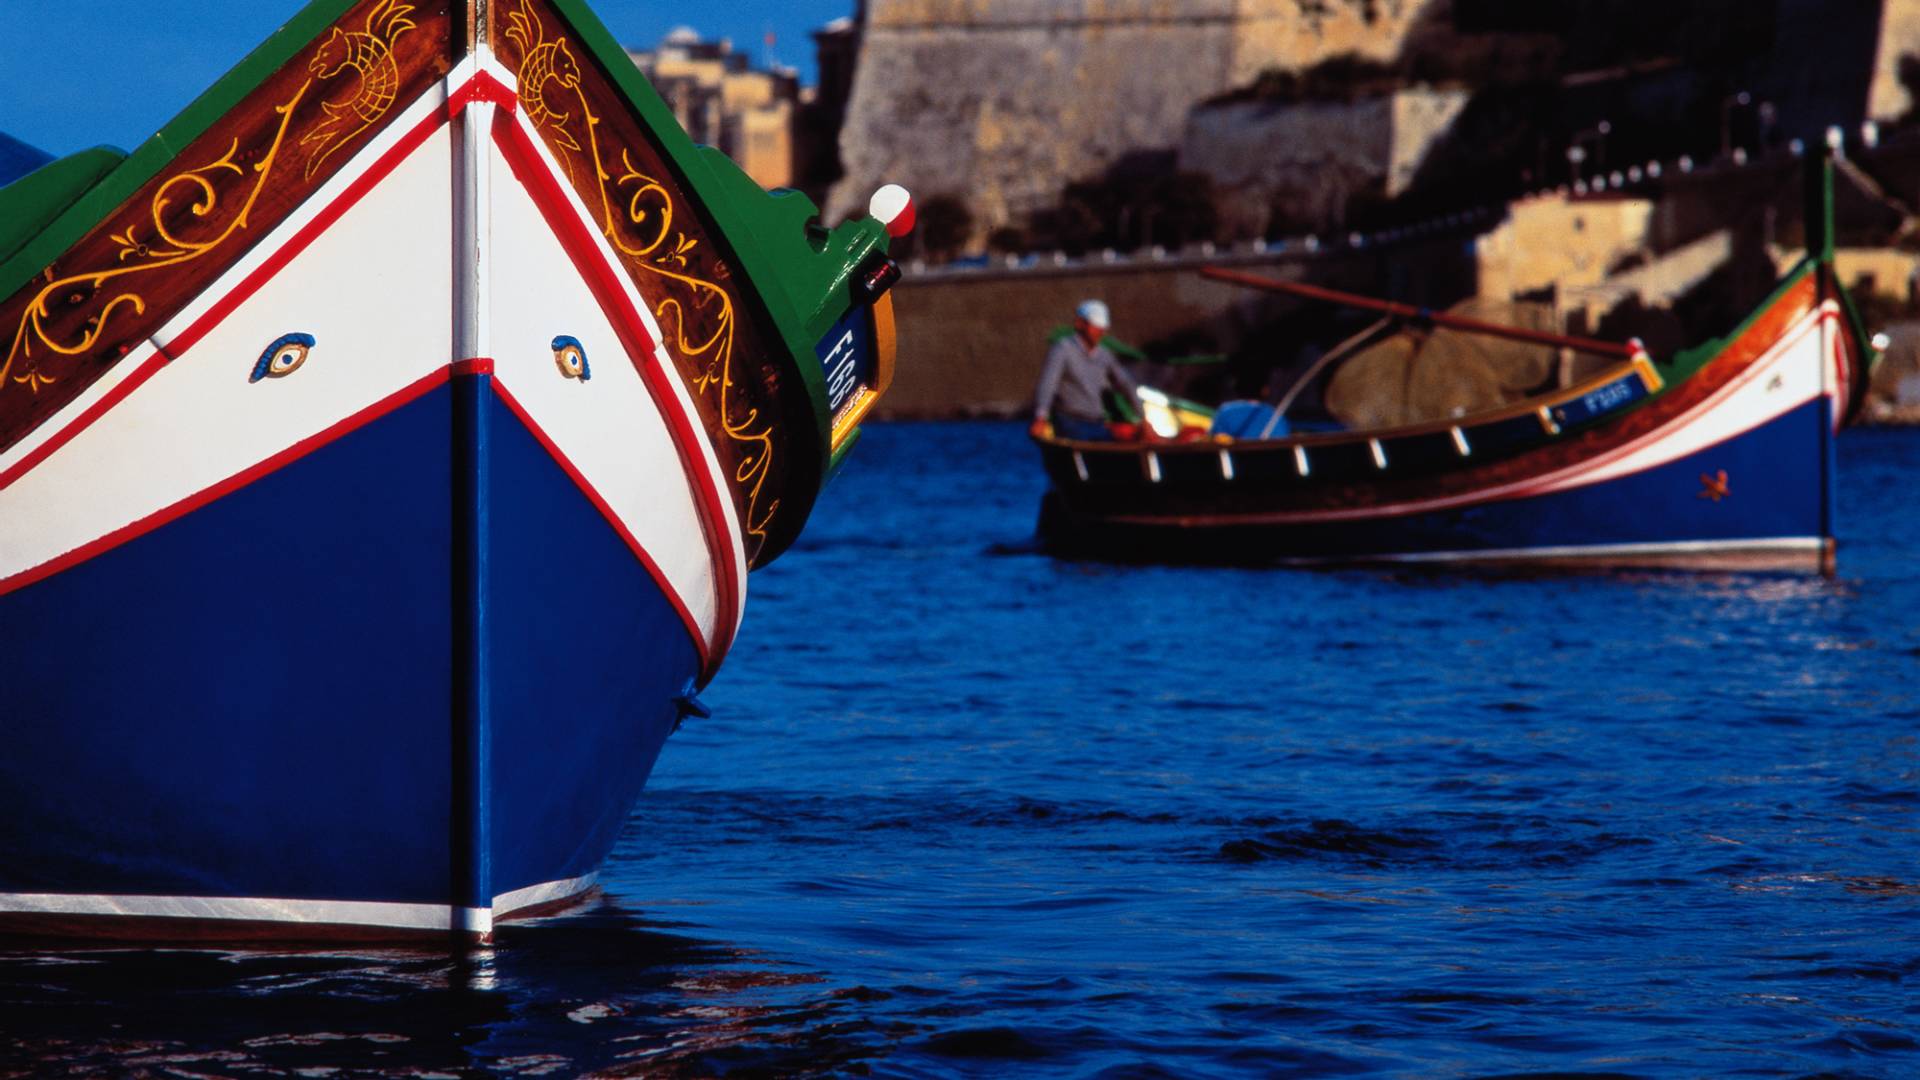 Marsaxlokk harbor with boats